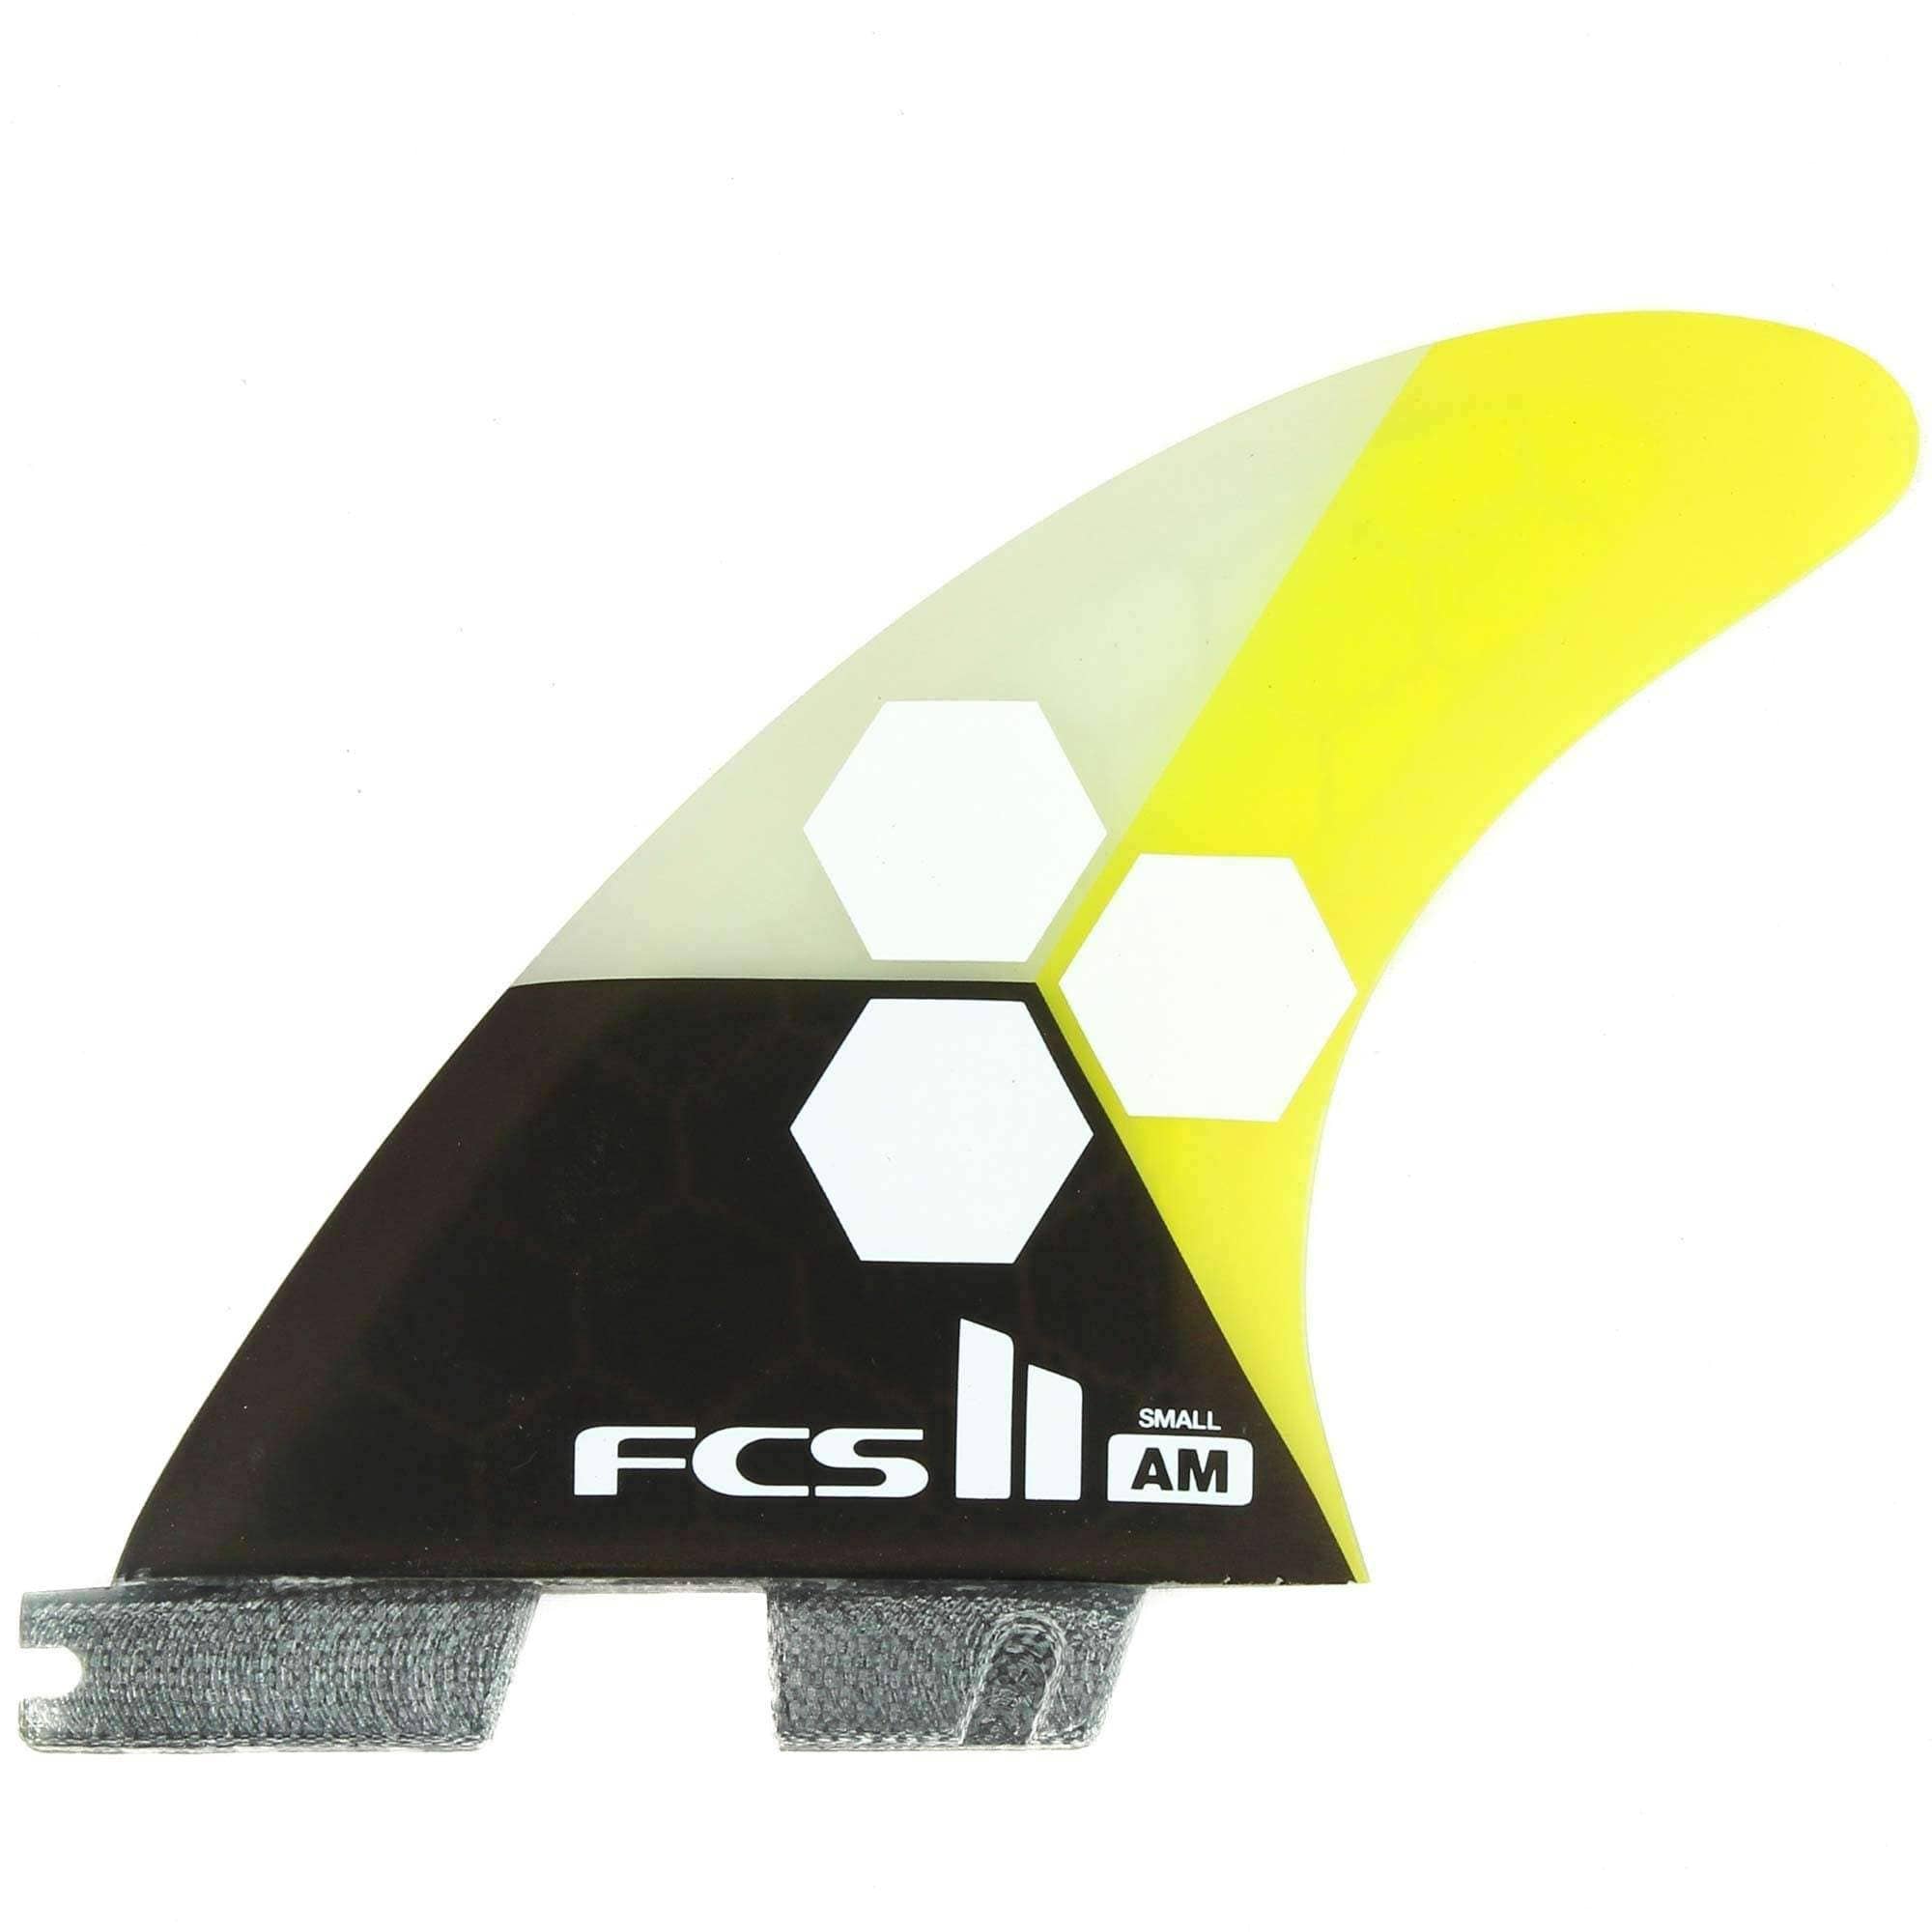 FCS II AM PC Small Tri Set Surfboard Fins in Yellow FCS II Fins by FCS Small Fins